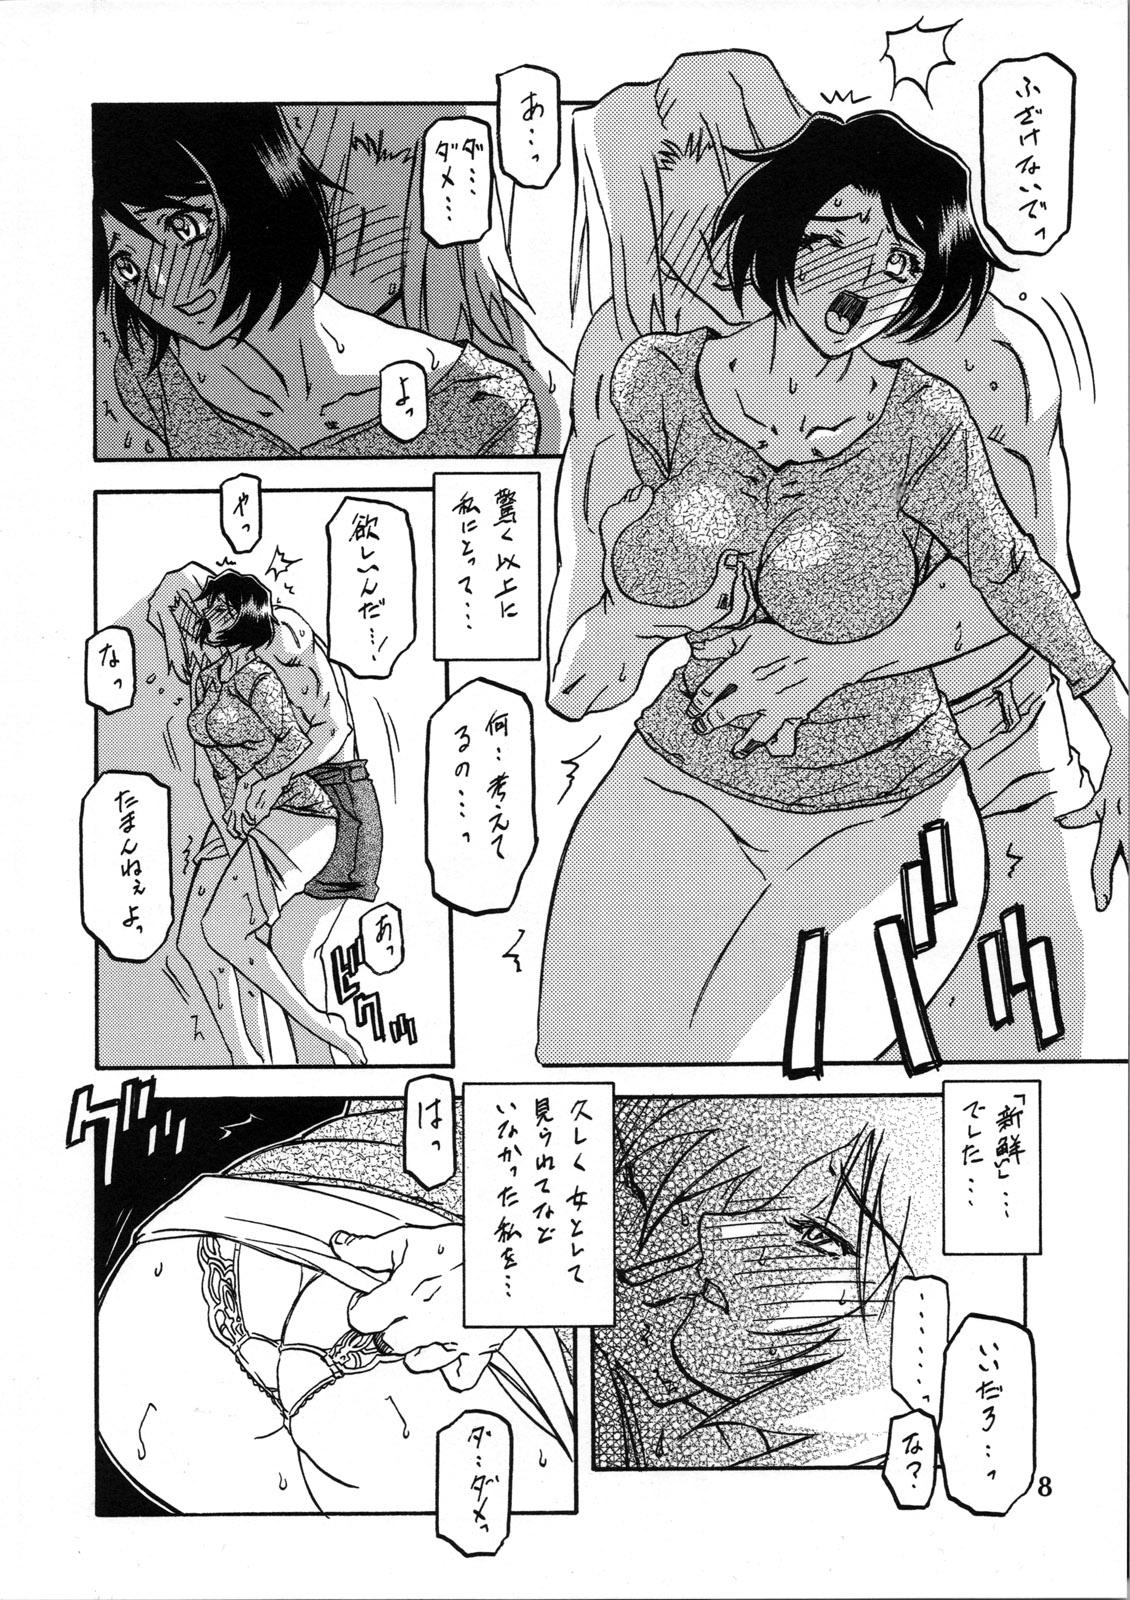 Sextoy Akebi no Mi - Satomi Katei - Akebi no mi Gay Bukkake - Page 7